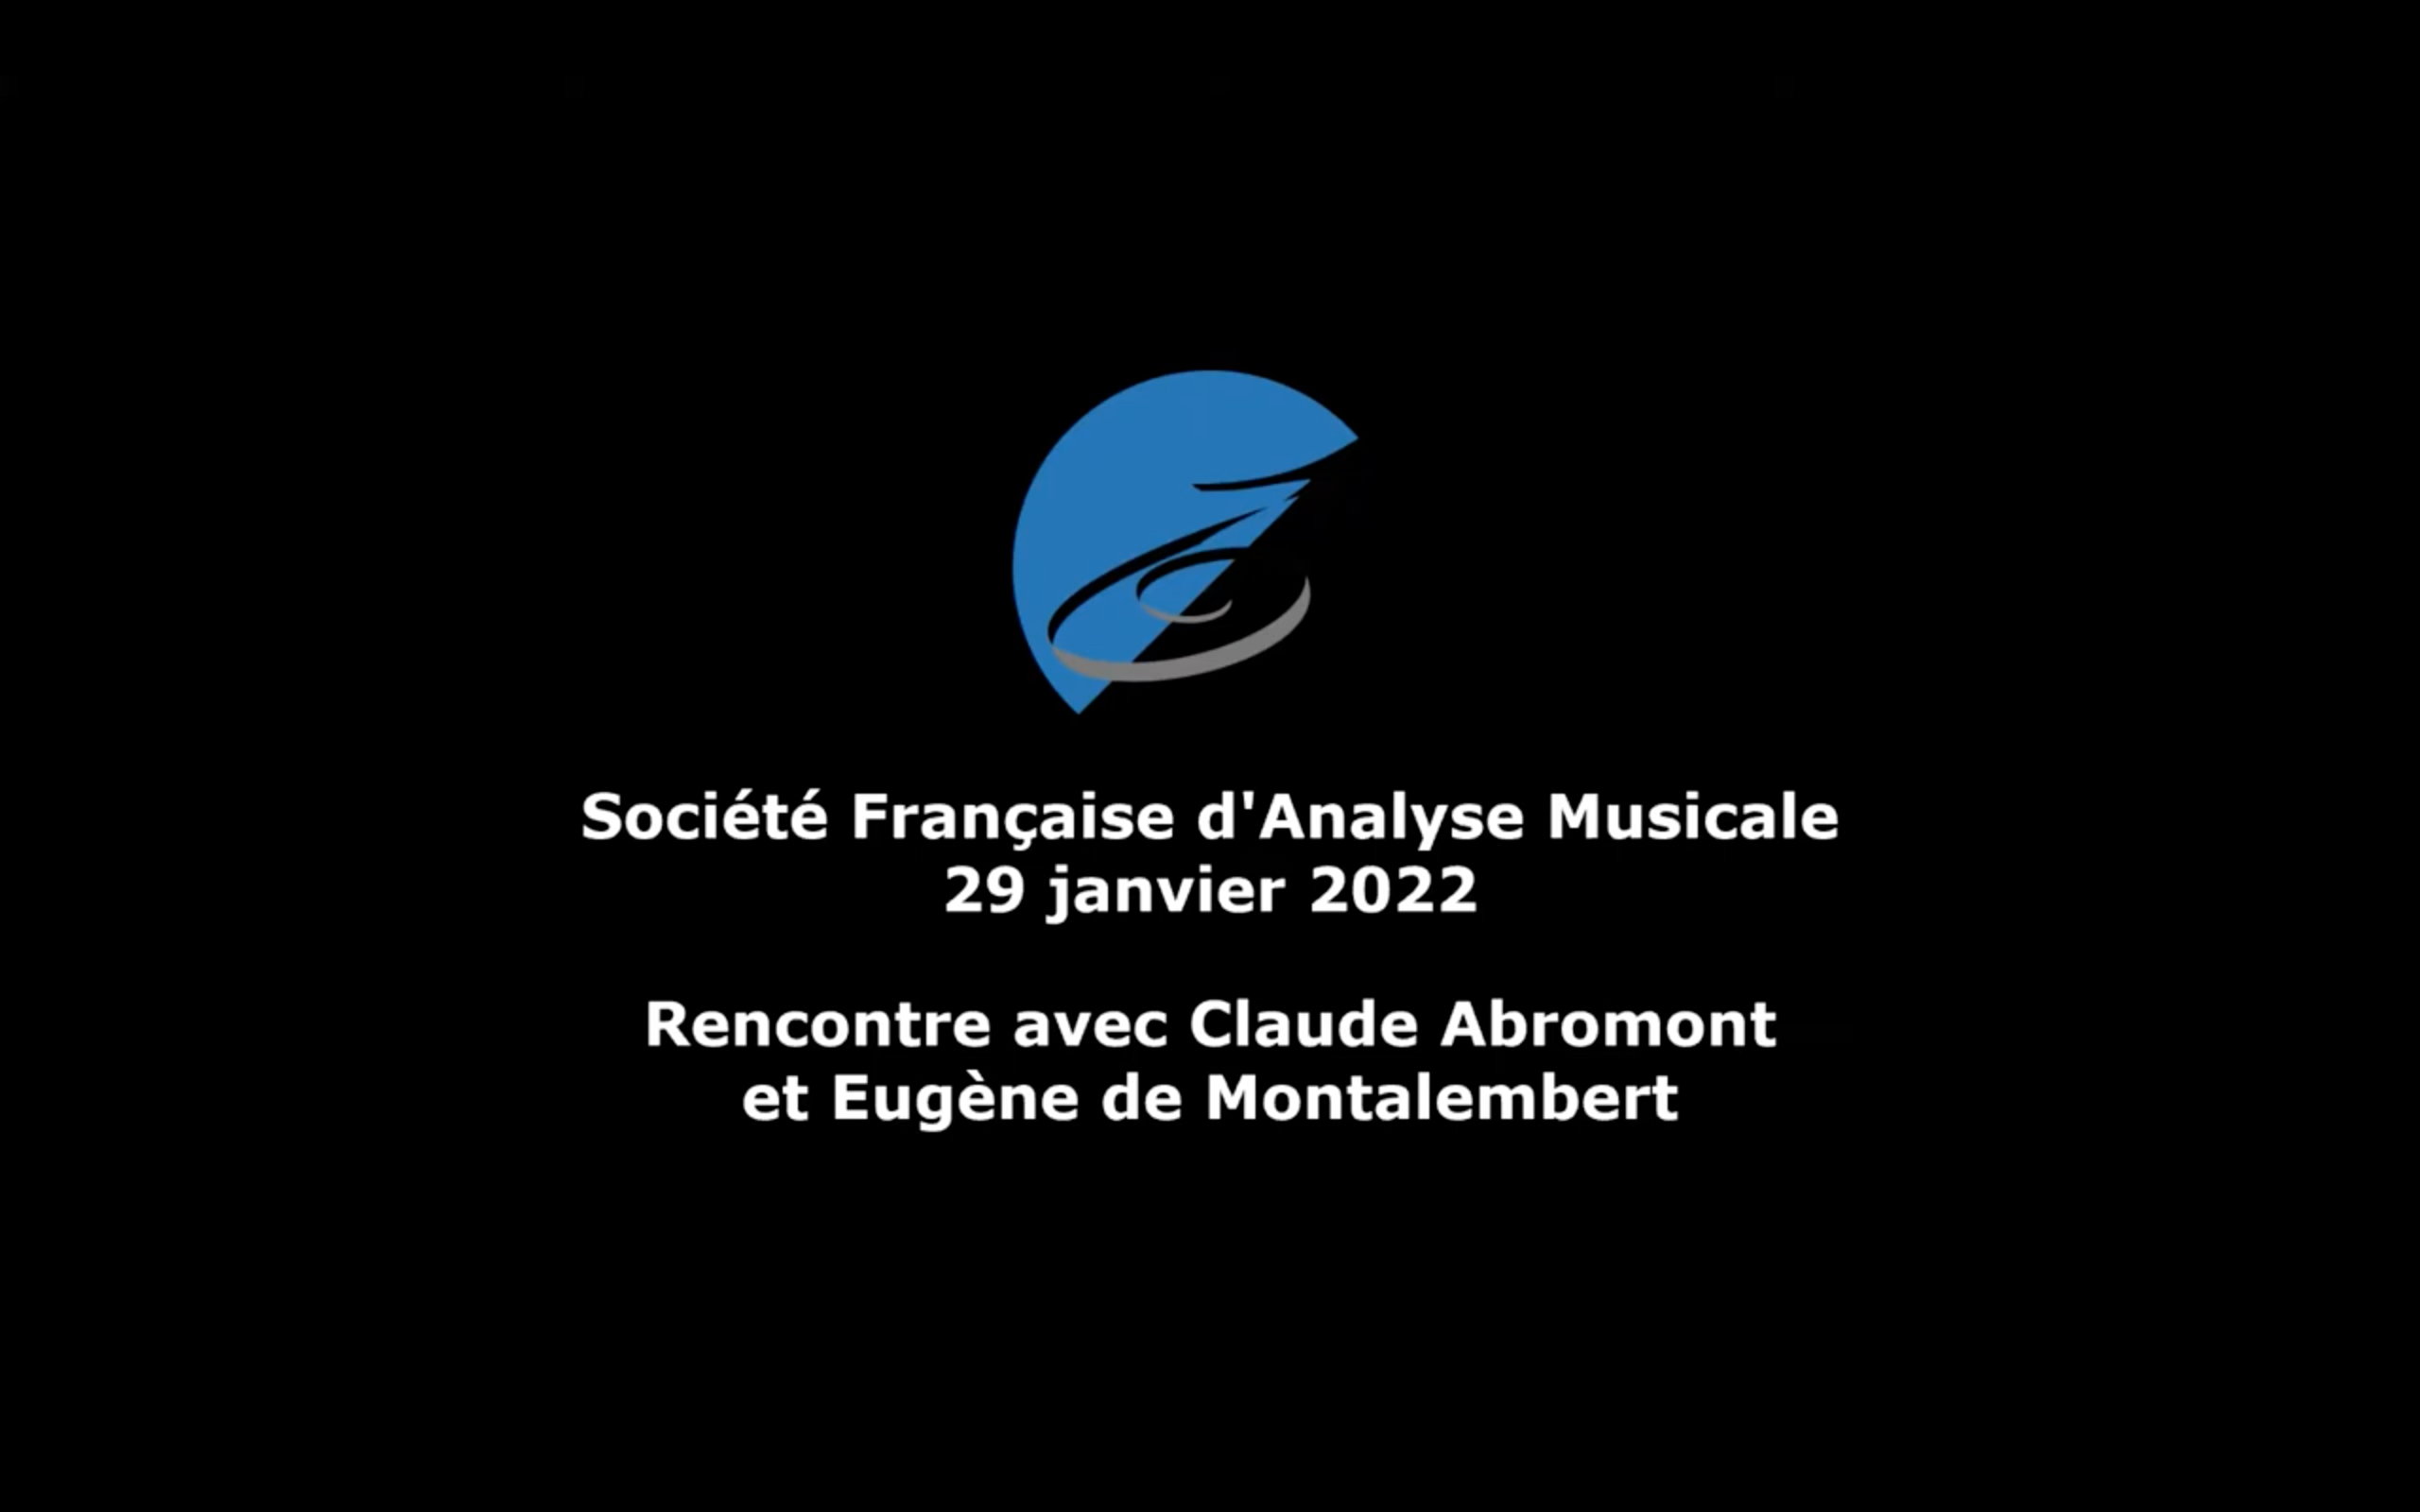 You are currently viewing Rencontre avec Claude Abromont et Eugène de Montalembert